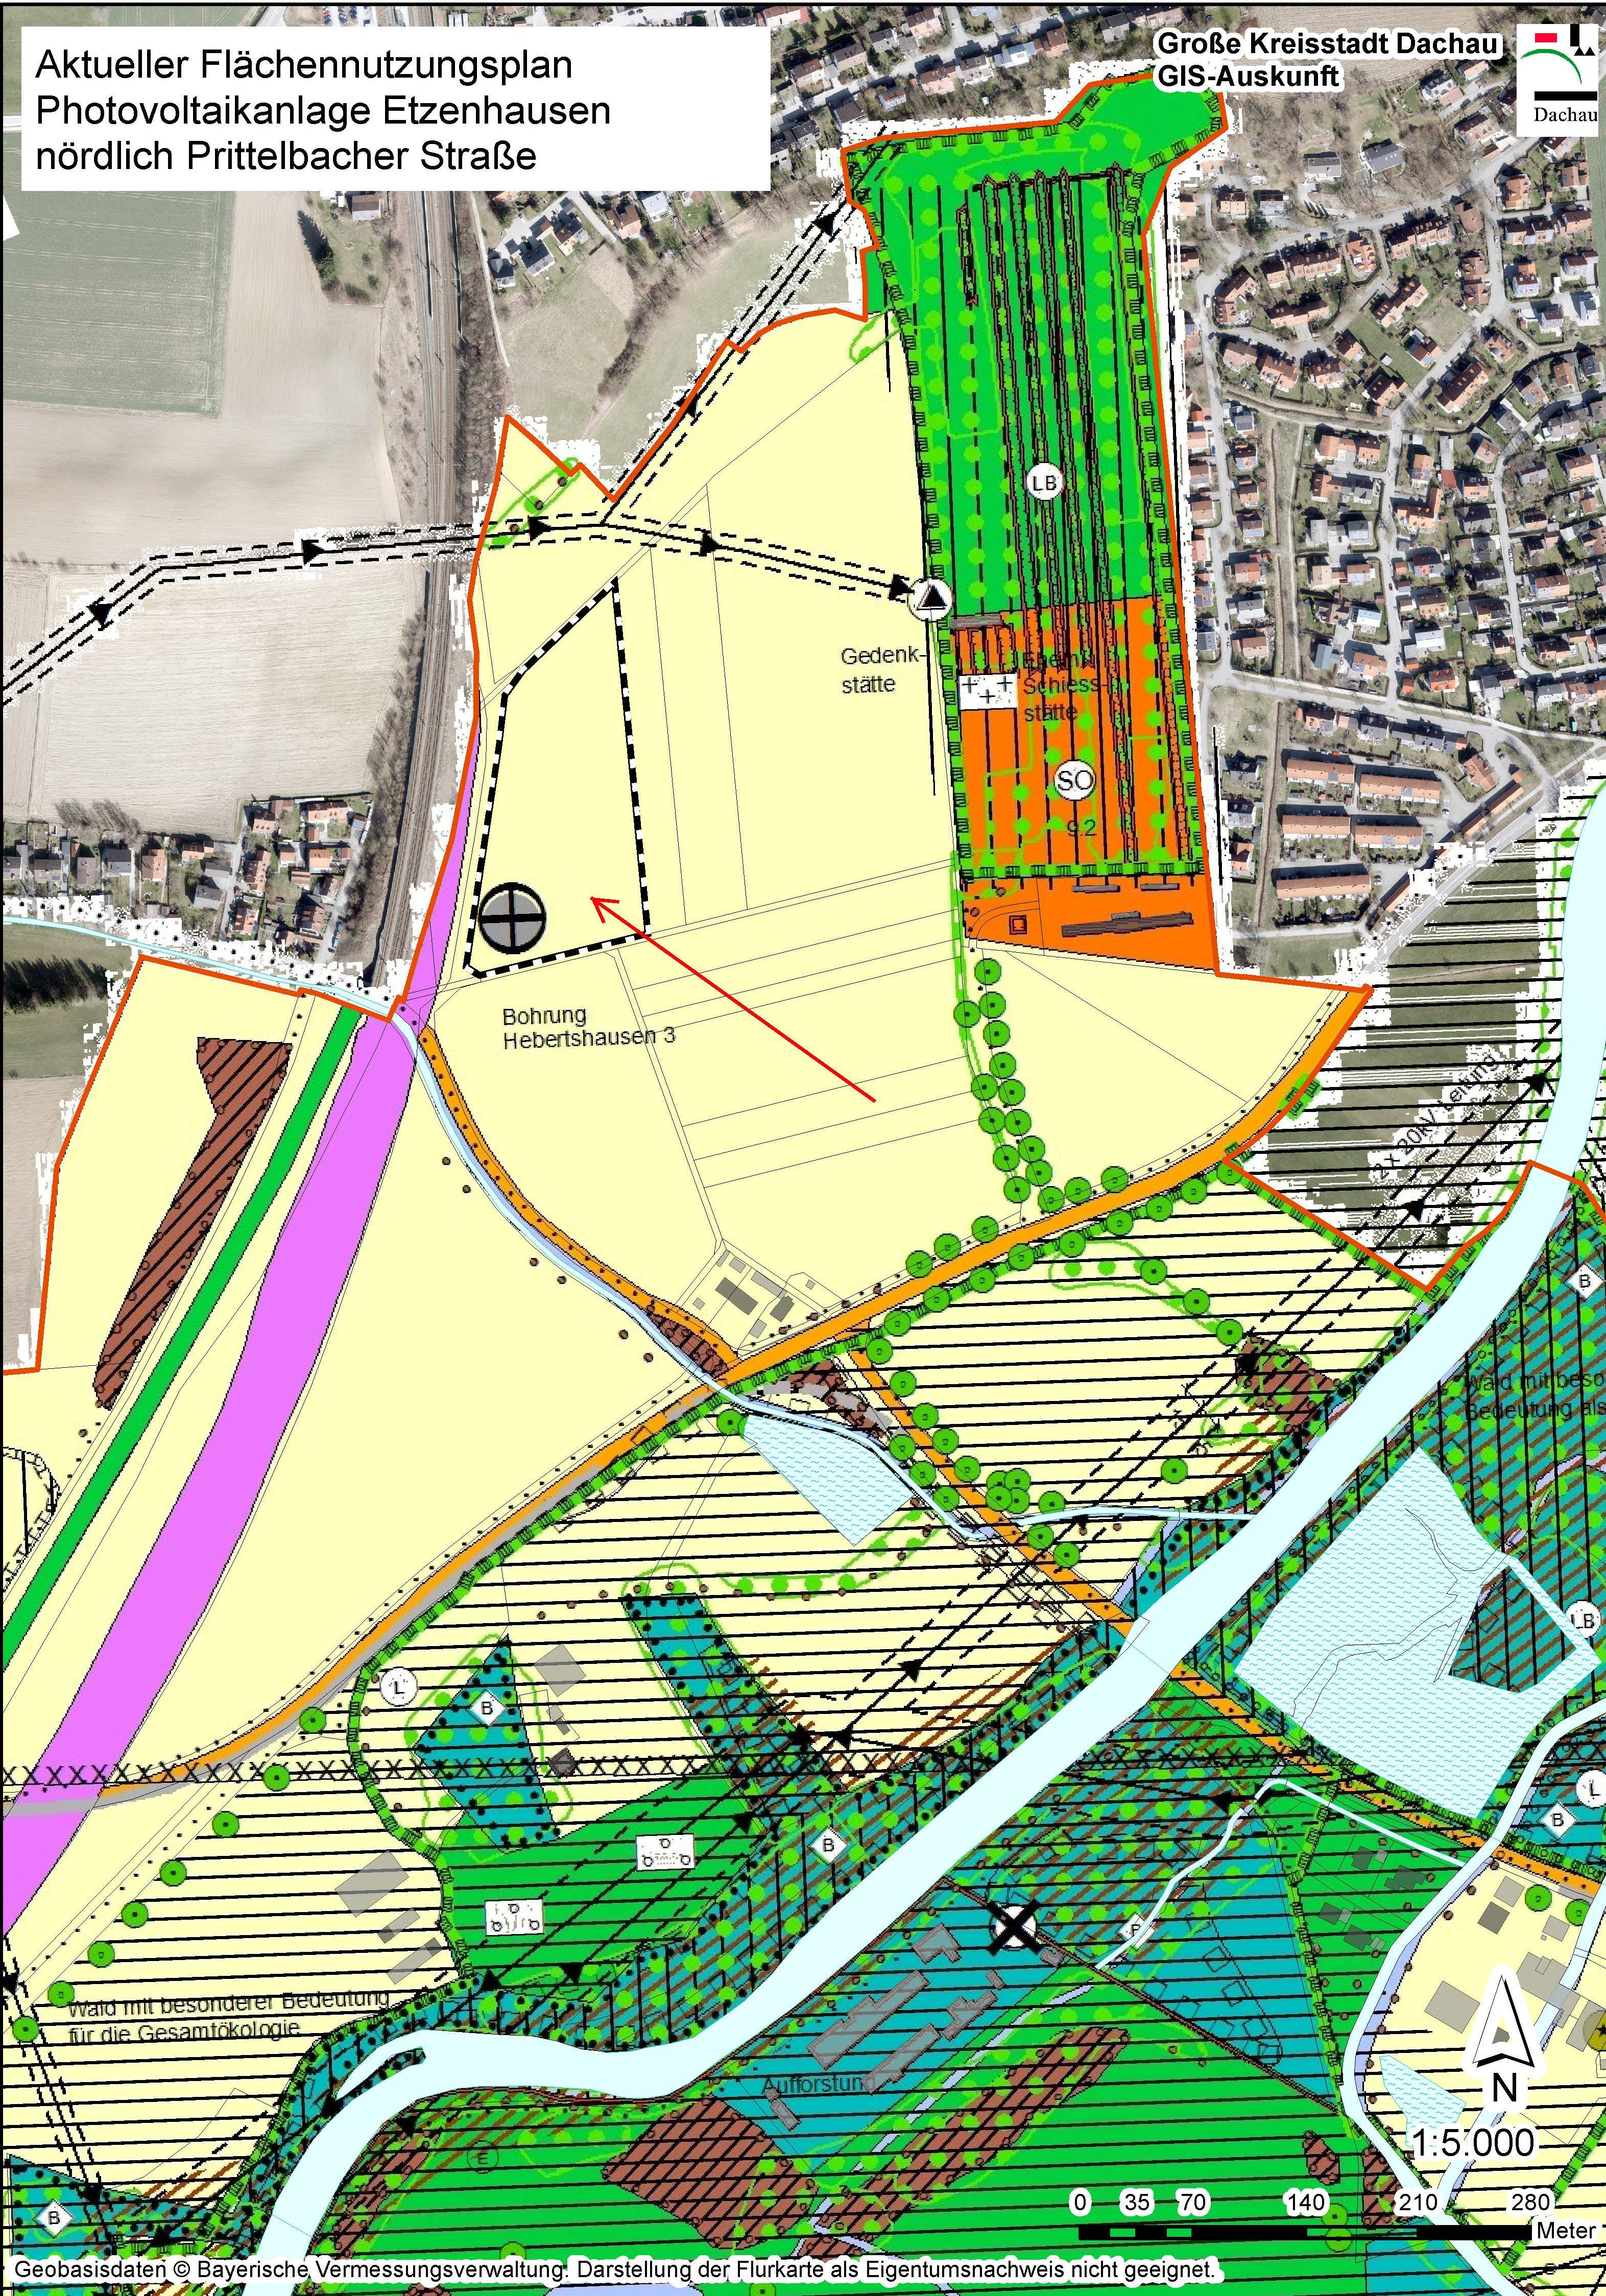 Mehrfarbiger Ausschnitt des Stadtplans, der den Ort der geplanten Freiflächenphotovoltaikanlage anzeigt